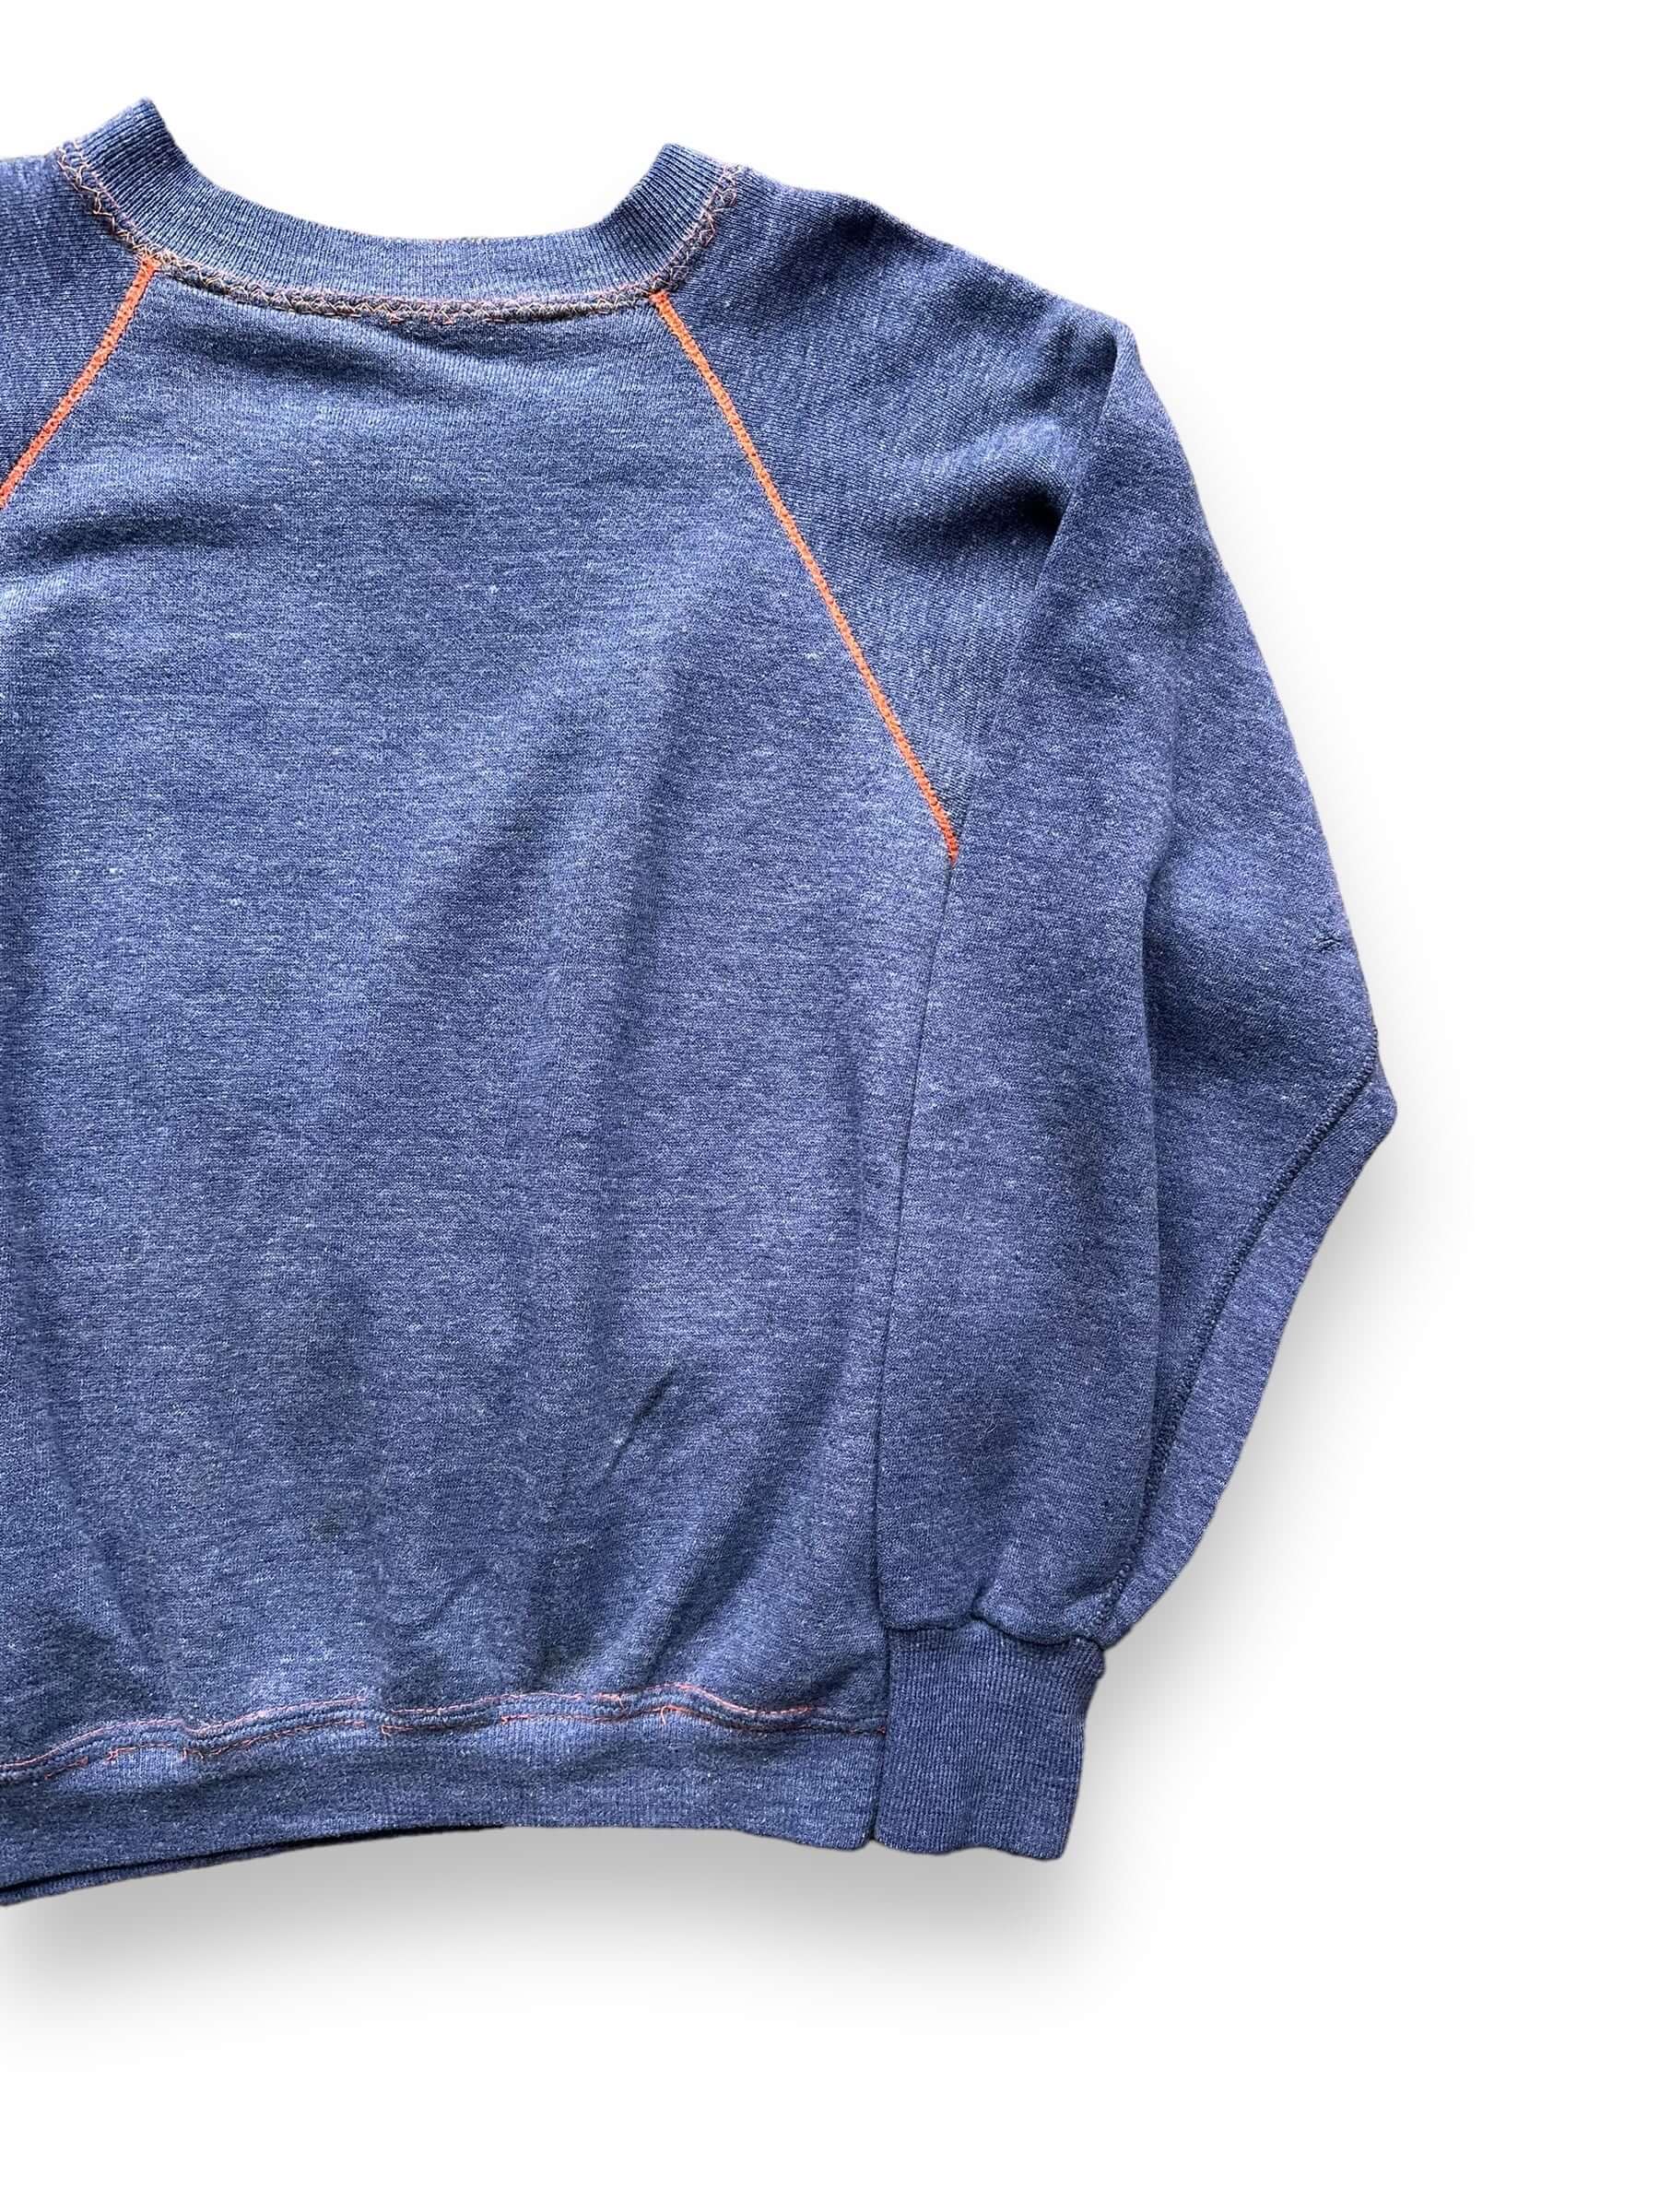 Front Left View of Vintage Blue & Orange Contrast Stitch Crewneck SZ M | Vintage Sweatshirt Seattle